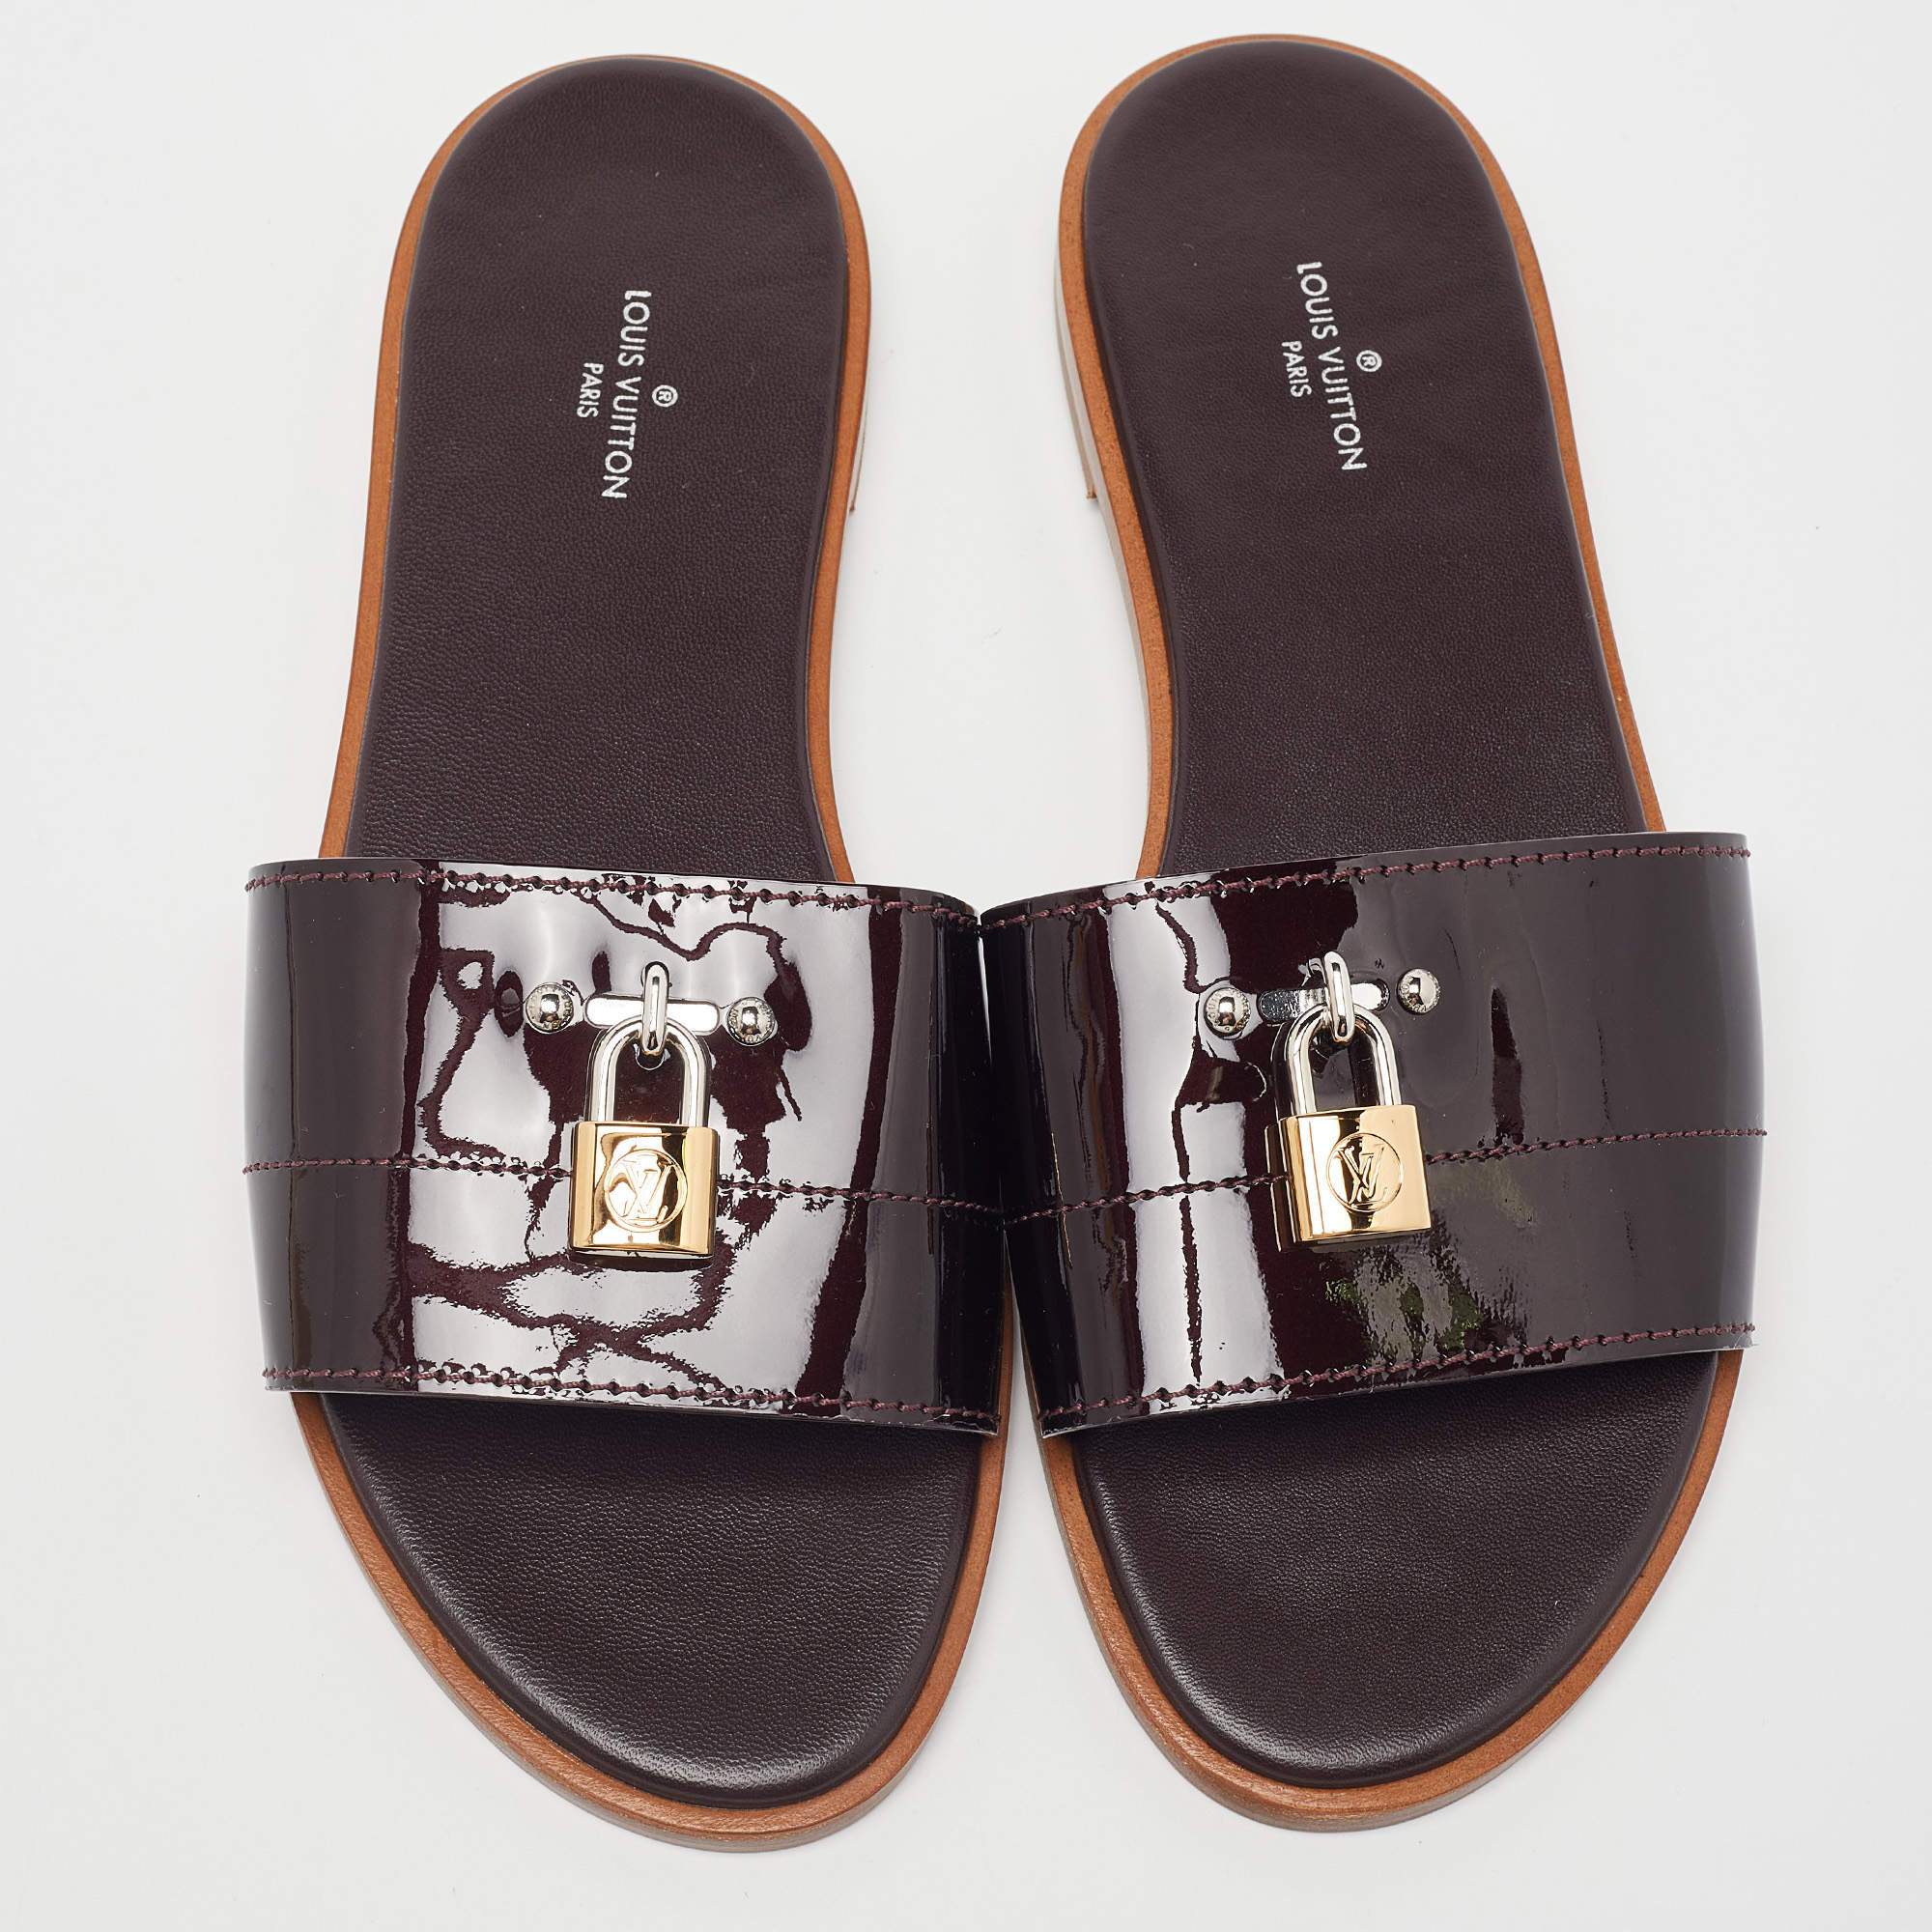 Authentic Louis Vuitton Amarante Patent Leather Sandal Size 9.5